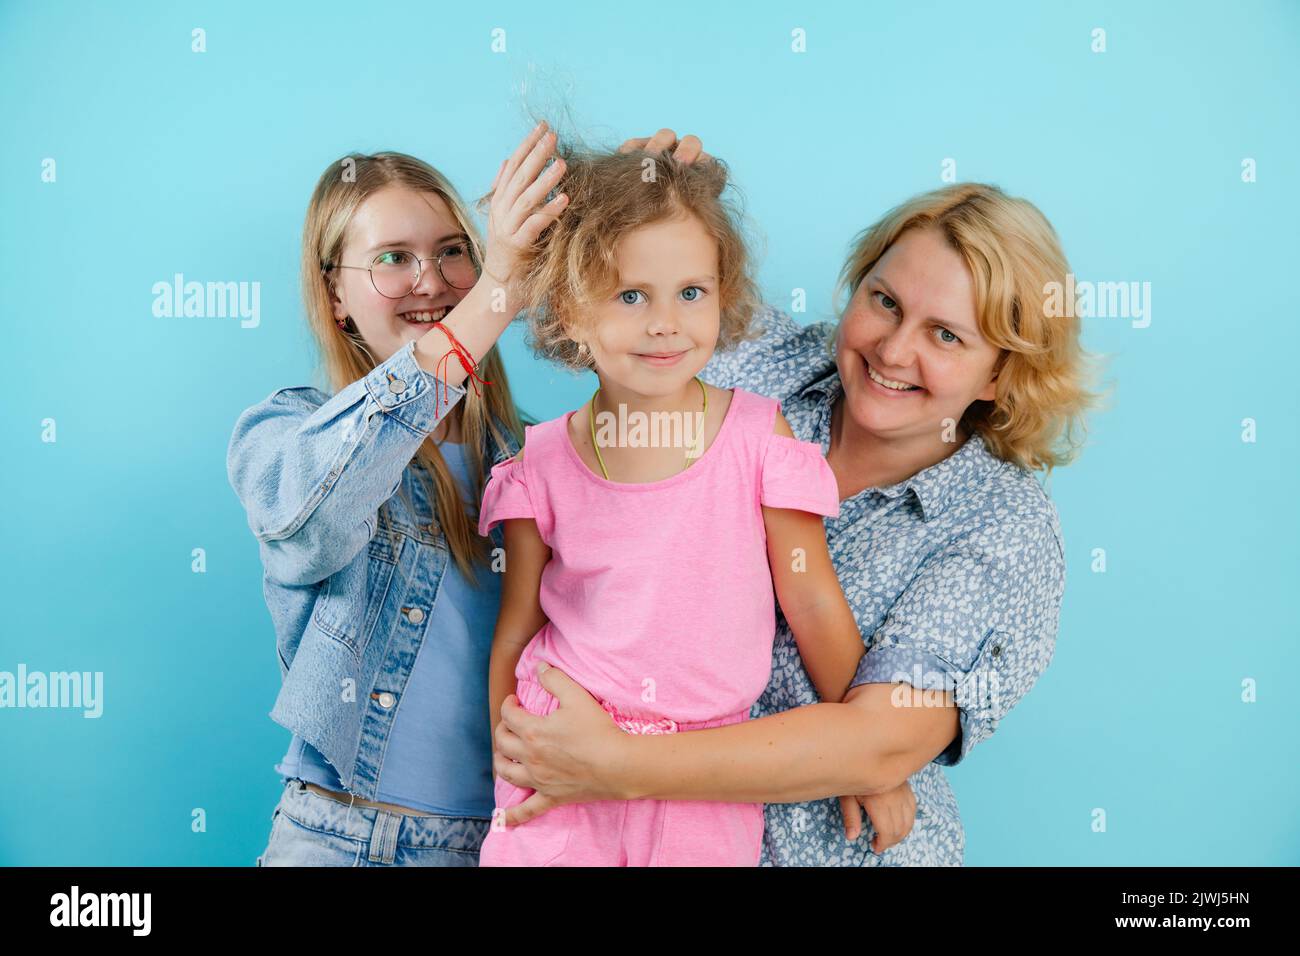 Porträt einer glücklichen Familie von drei Personen, die Spaß auf leerem blauen Hintergrund haben, freien Kopierraum. Ältere Schwester Rüschen Haare der jüngeren hübschen Schwester Stockfoto